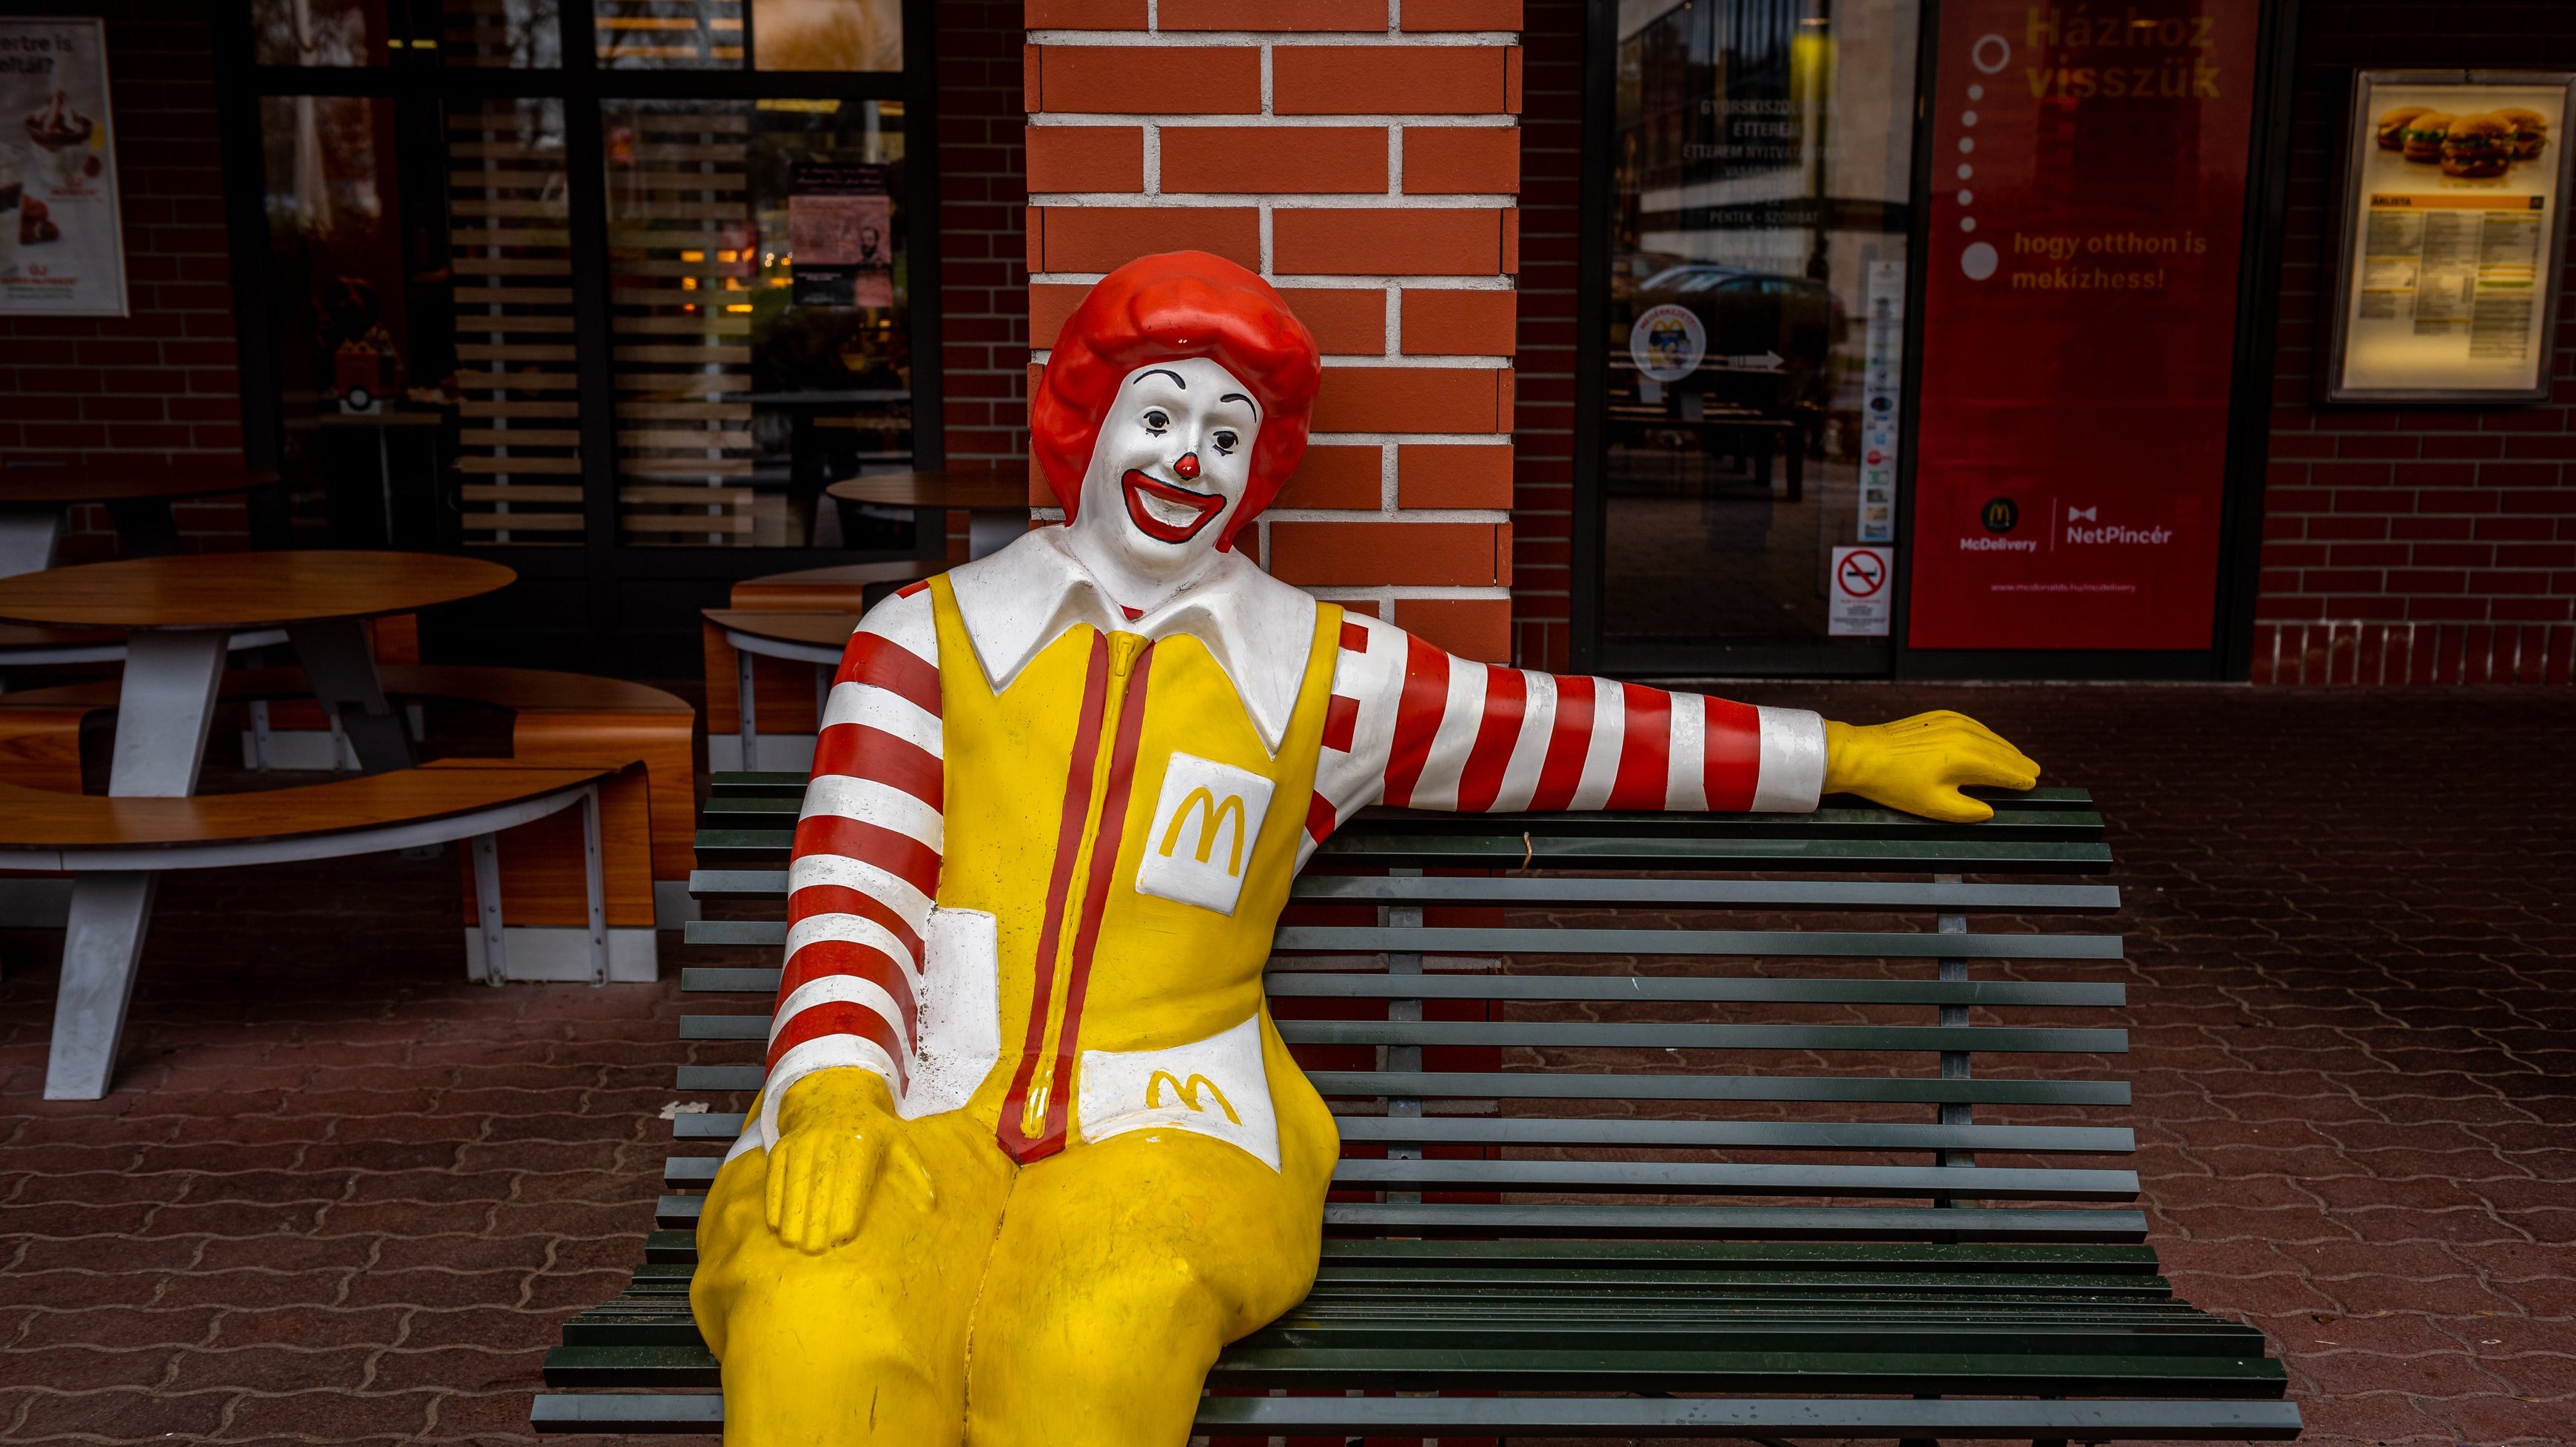 80 forintot számol fel a McDonald’s, ha elvitelre kérik a hamburgert